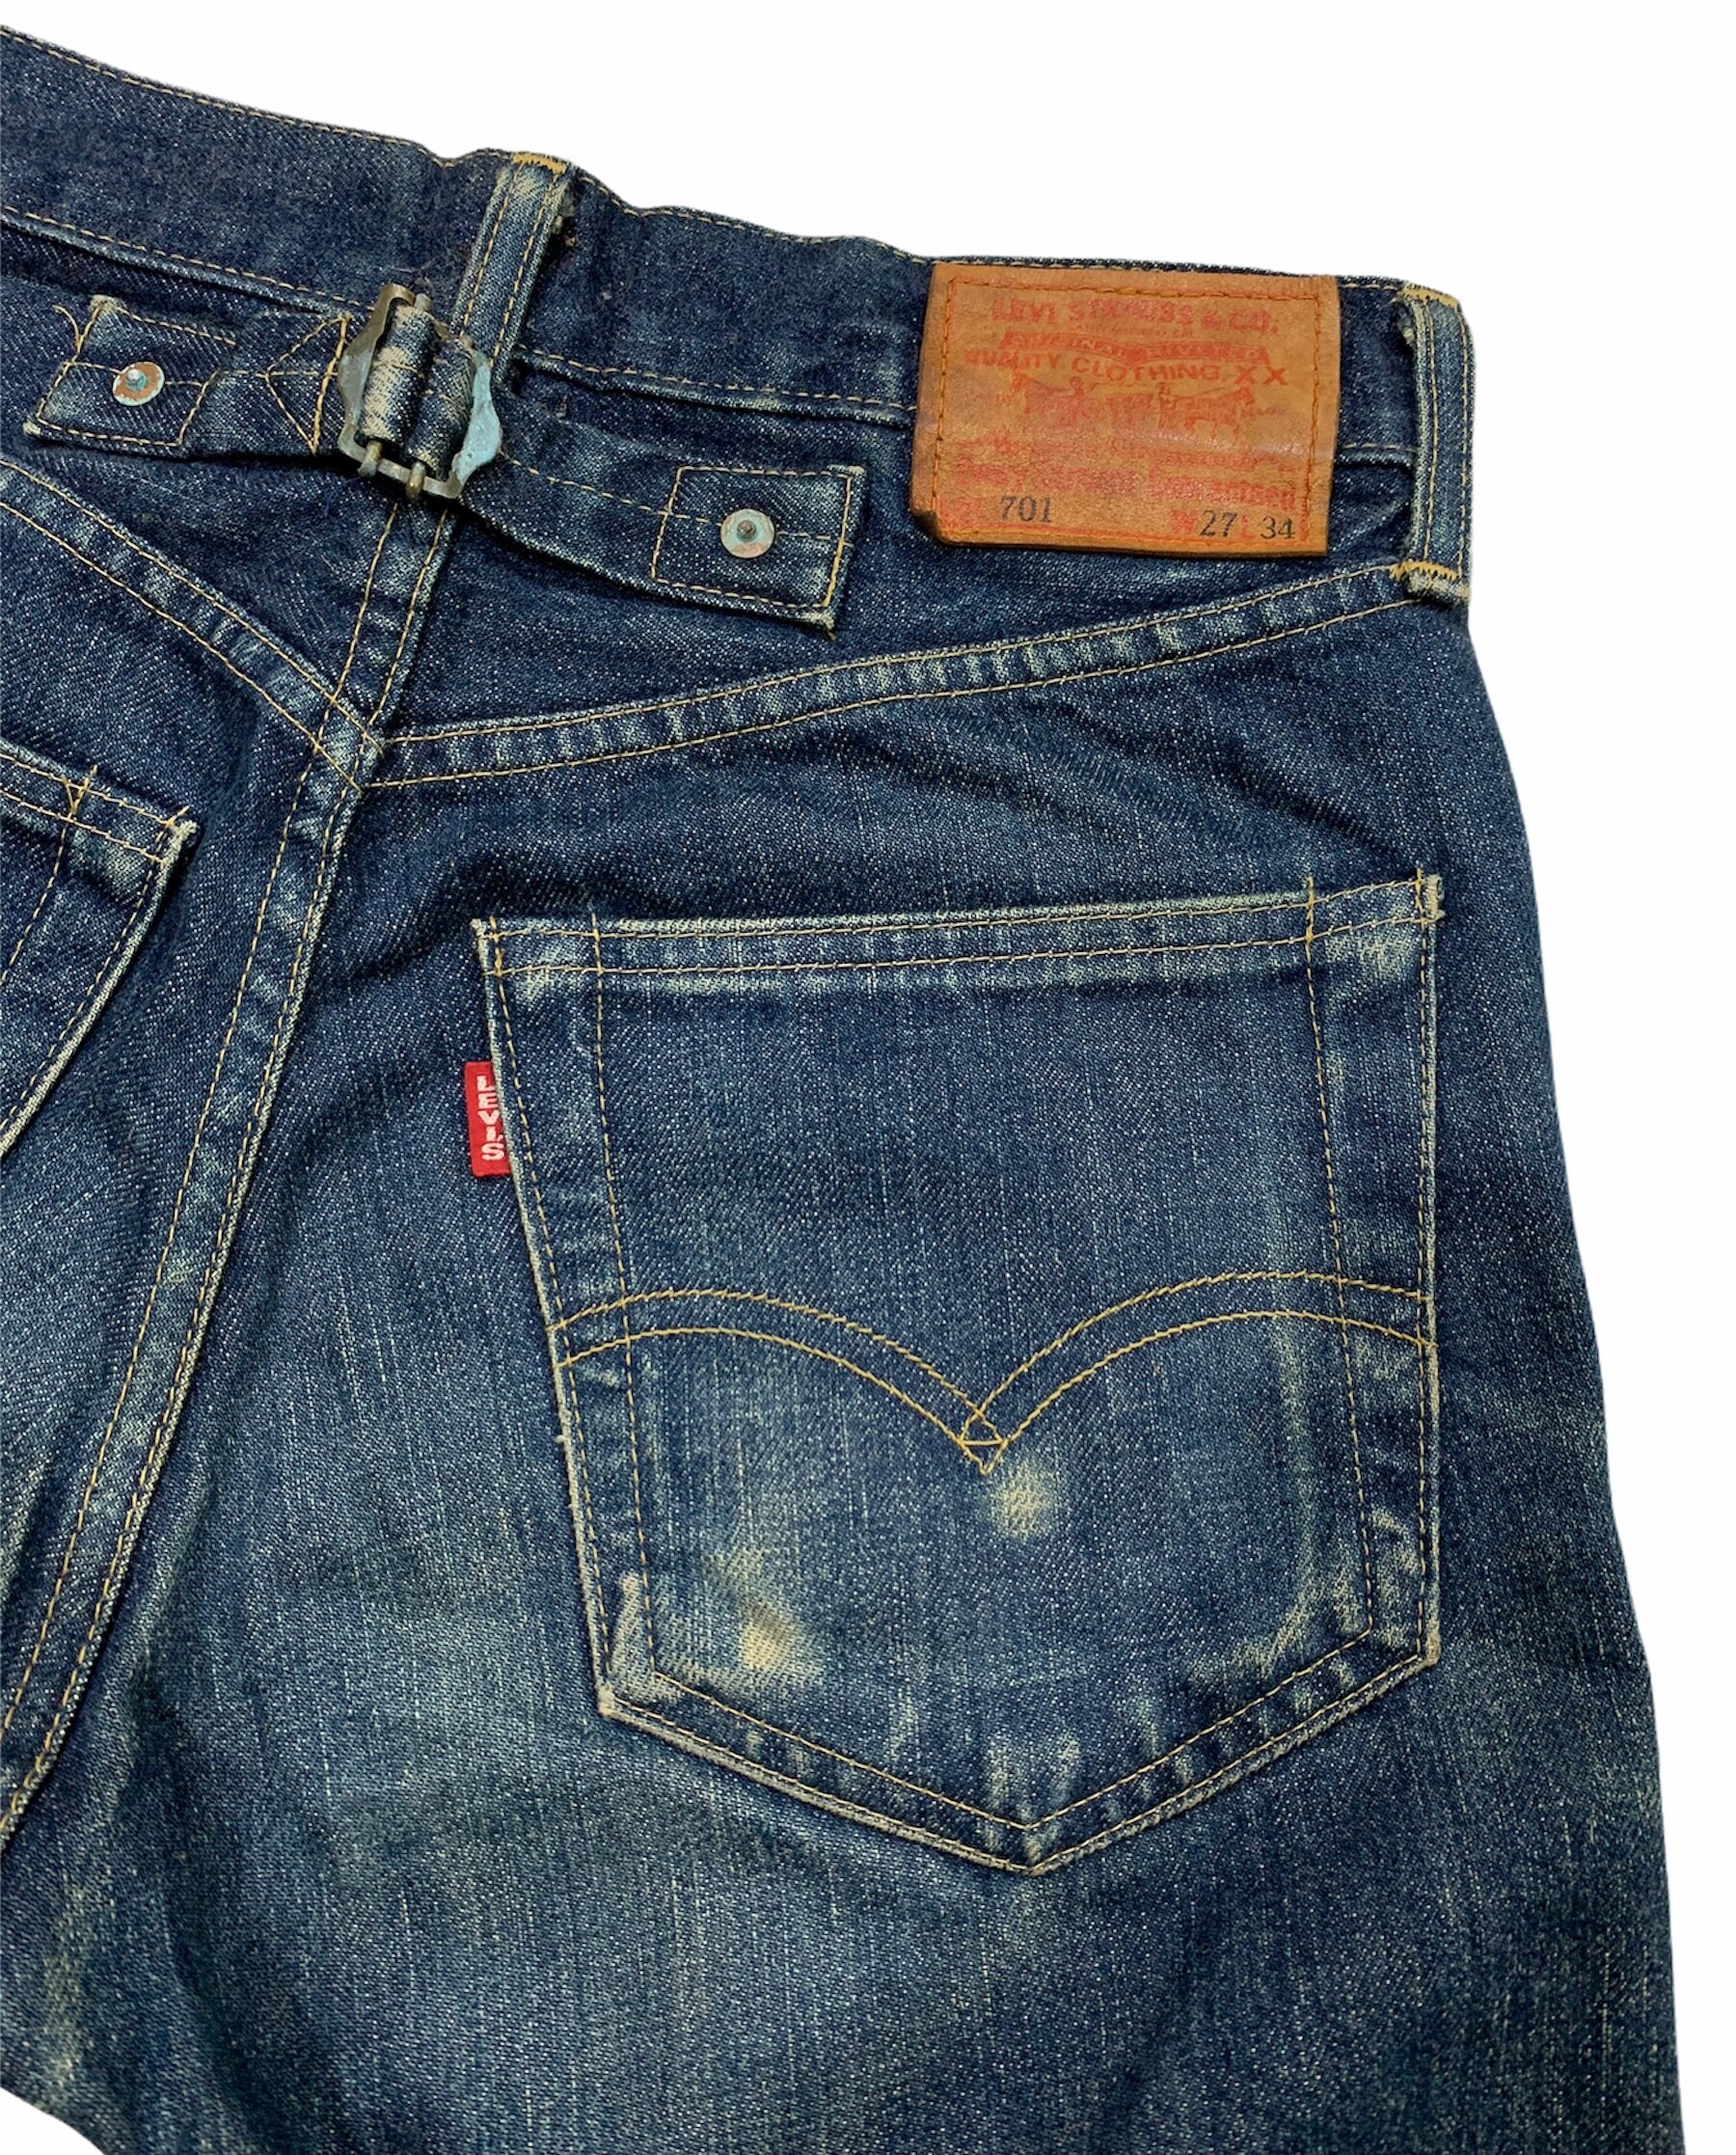 Rare Levis 701XX Big E buckle back vintage selvedge jeans | Etsy